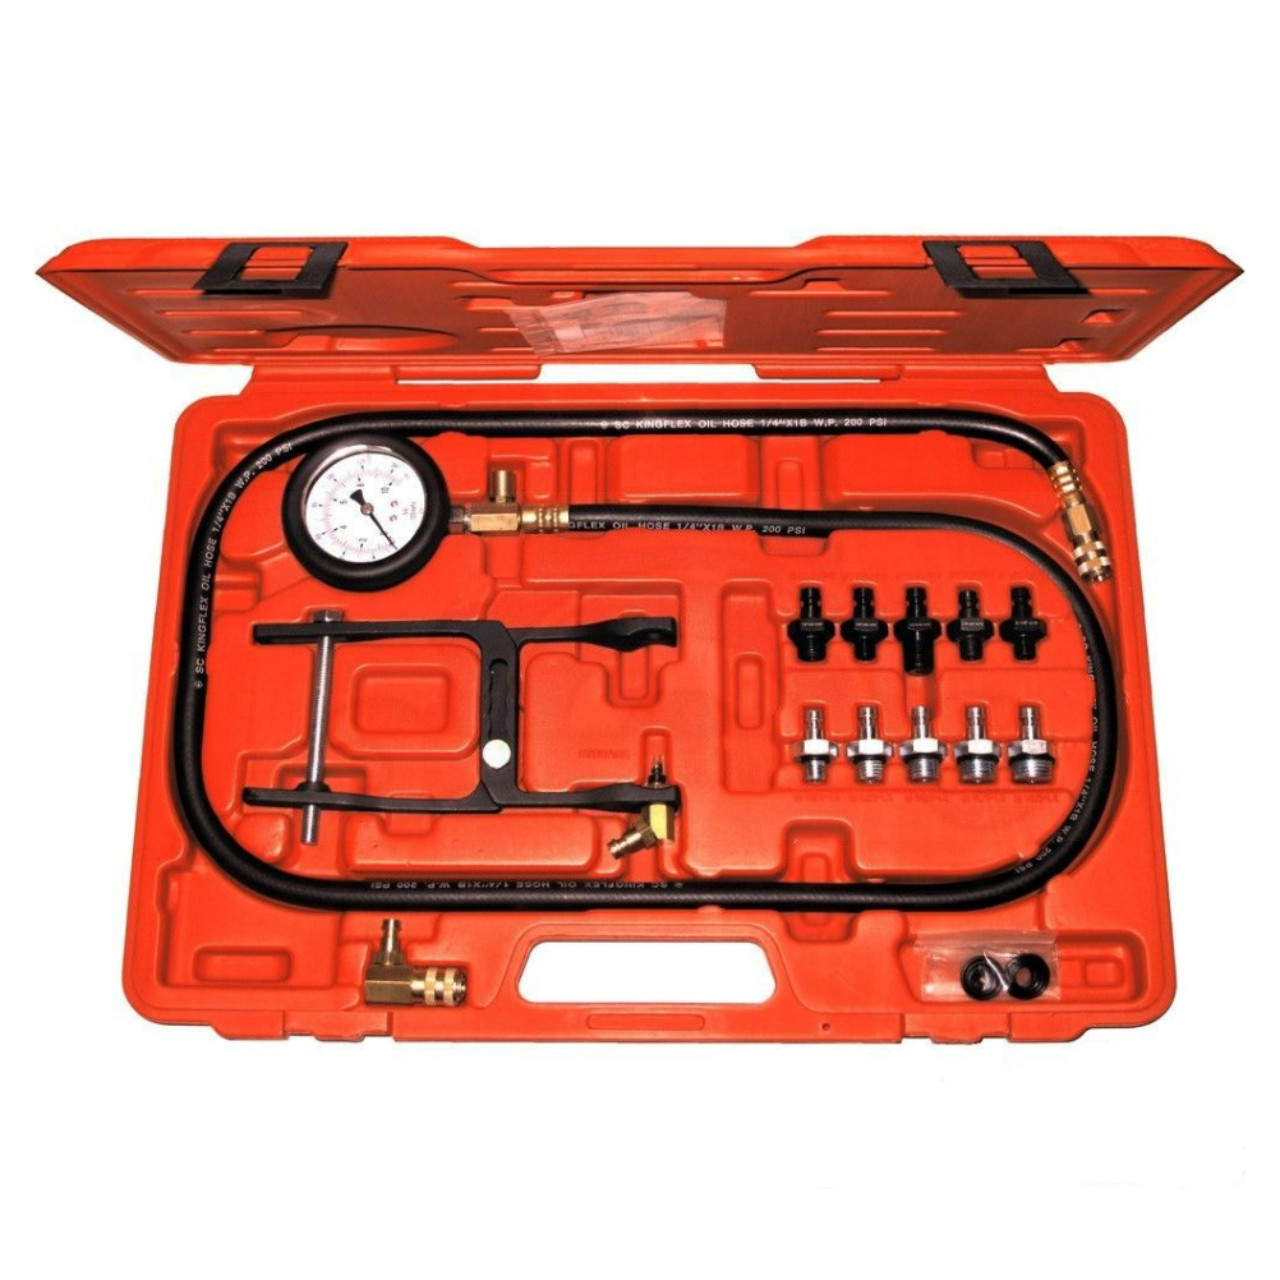 Universal Oil Pressure Tester Kit